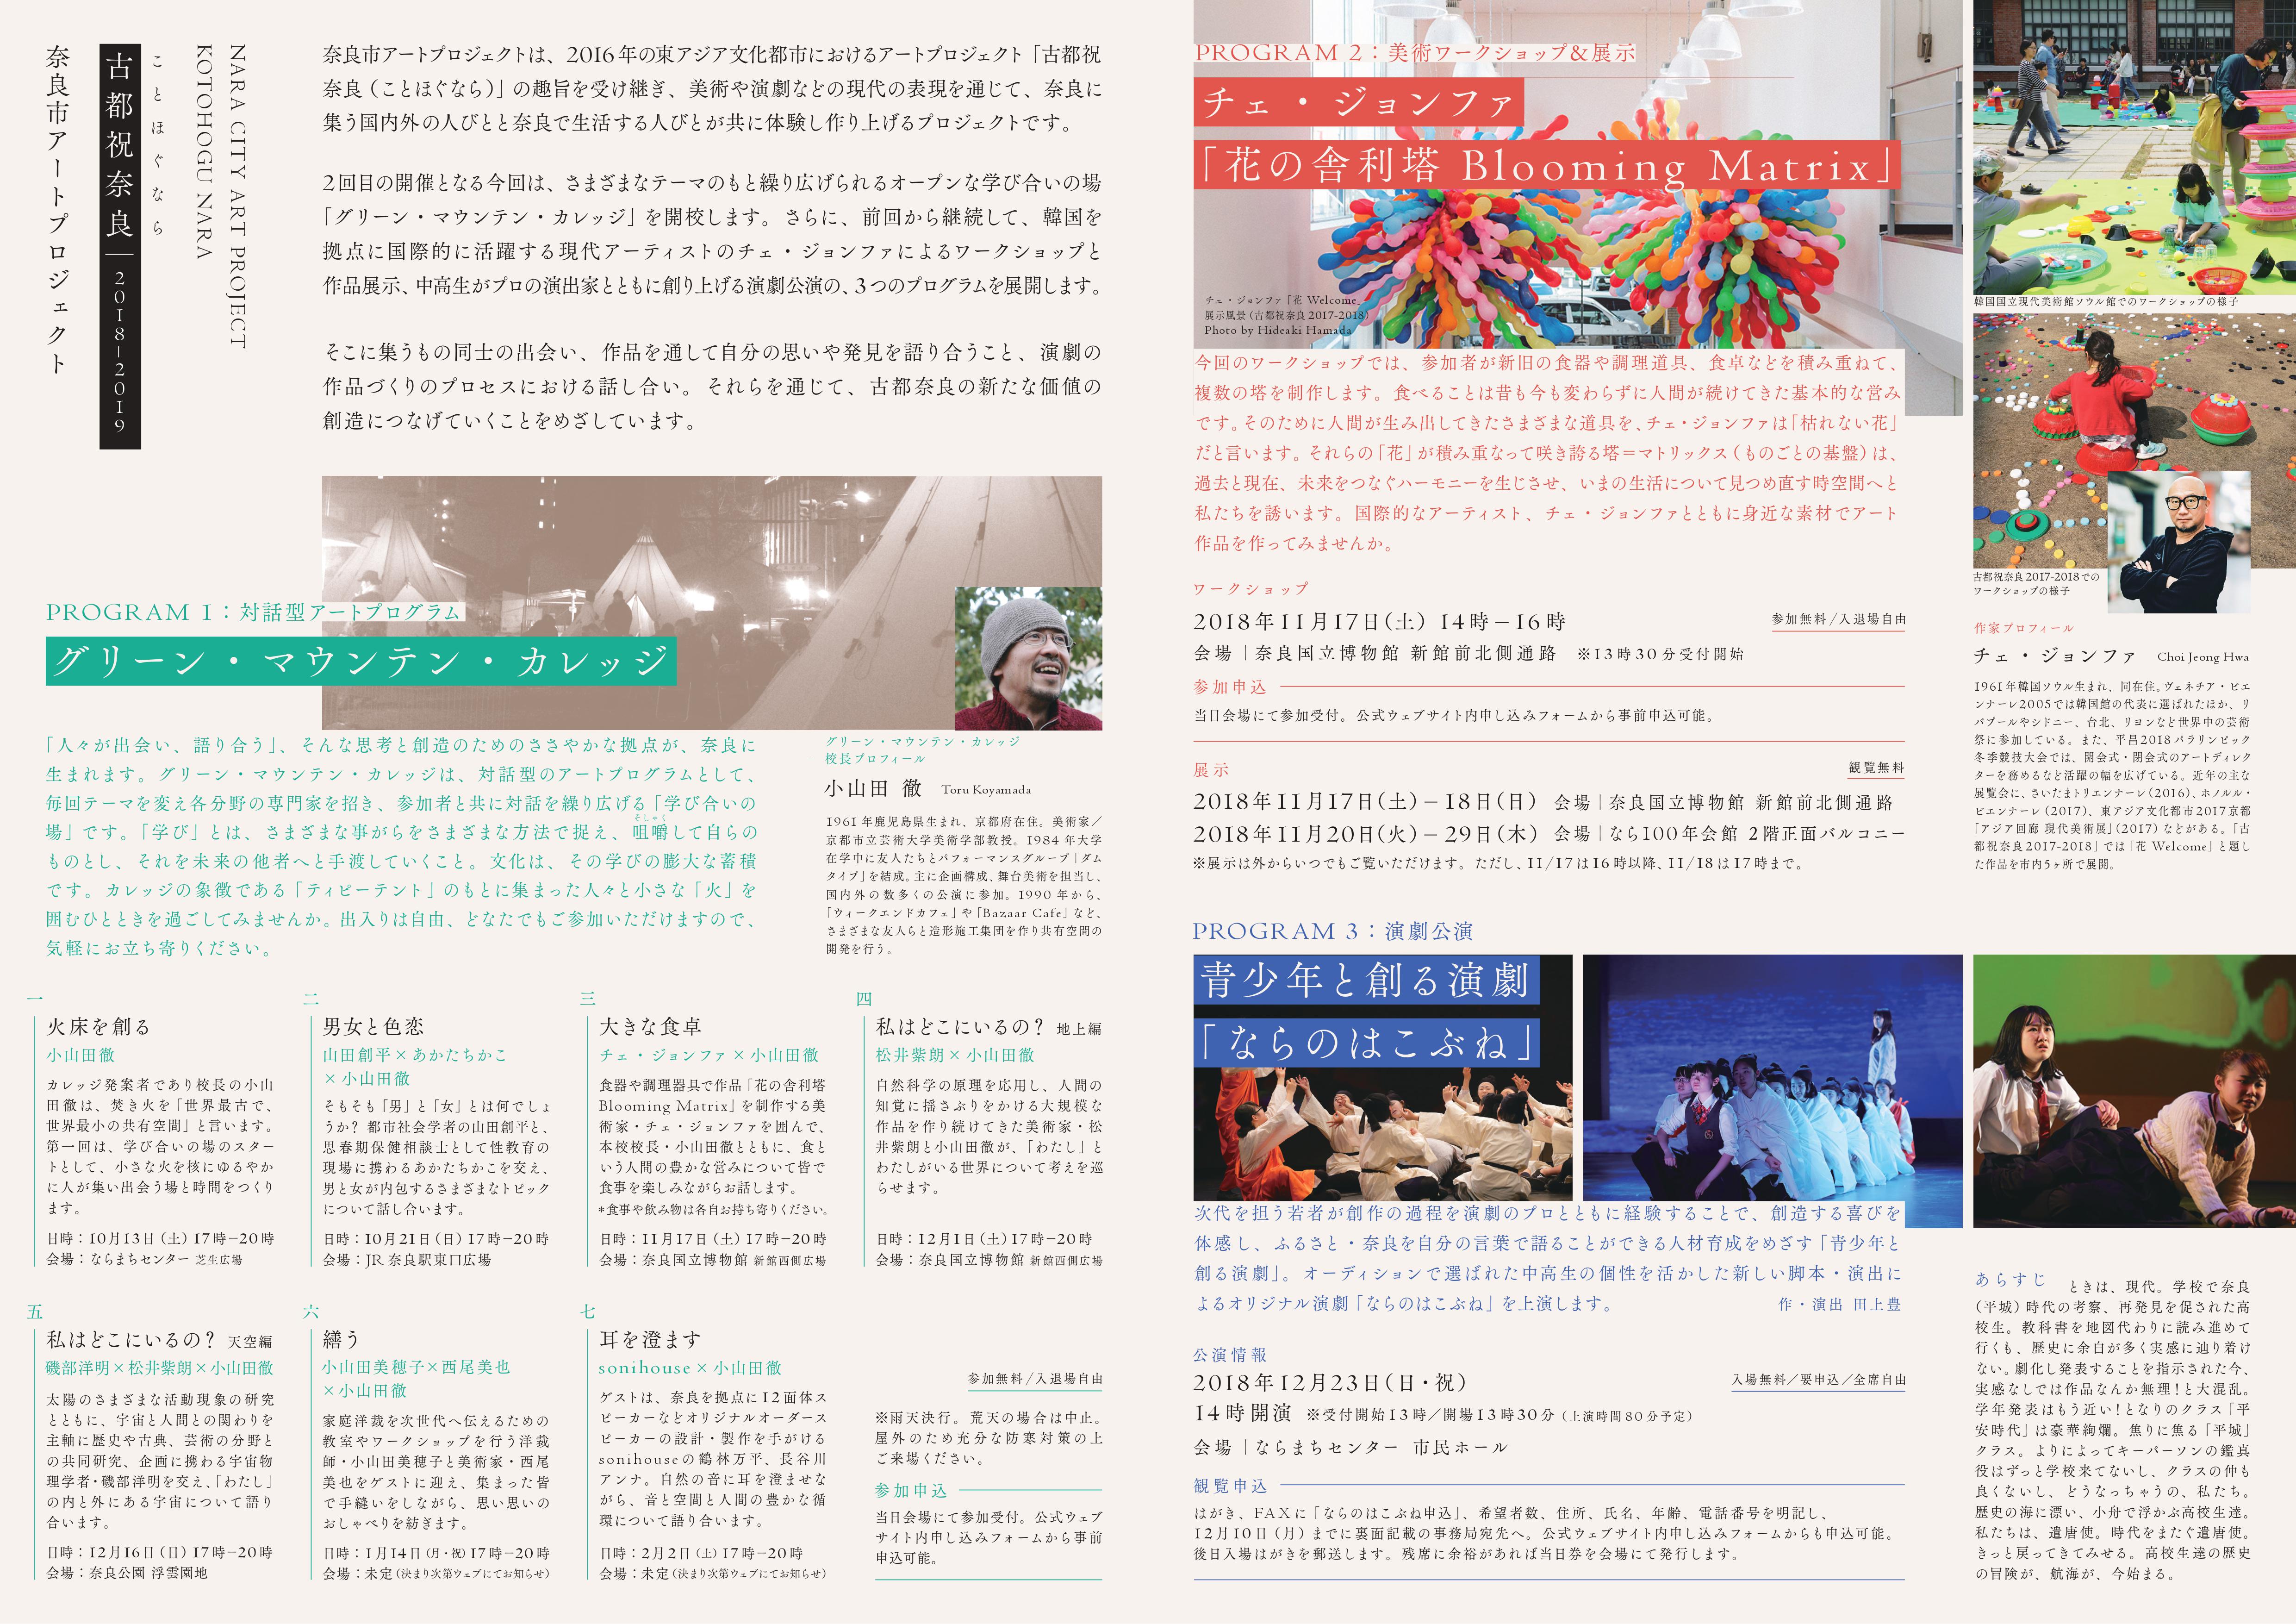 奈良市アートプロジェクト「古都祝奈良2018-2019」事業チラシ 及び第1回「グリーン・マウンテン・カレッジ」(10/13)について(平成30年10月10日発表)の画像2